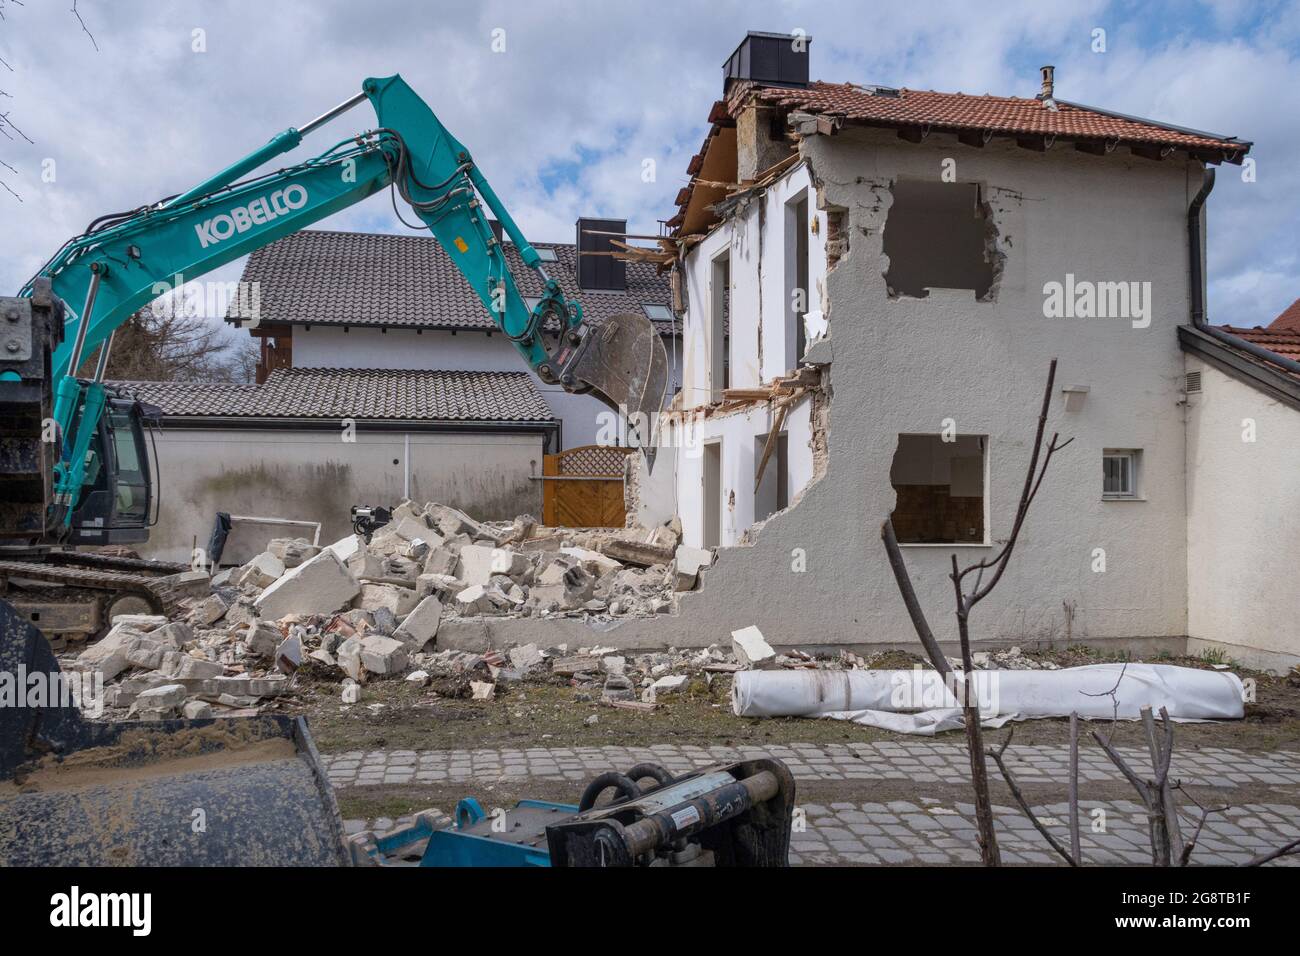 Pelle démolit un petit bâtiment résidentiel à partir de 1950, consolidation urbaine, Allemagne, Bavière, Dorfen Banque D'Images